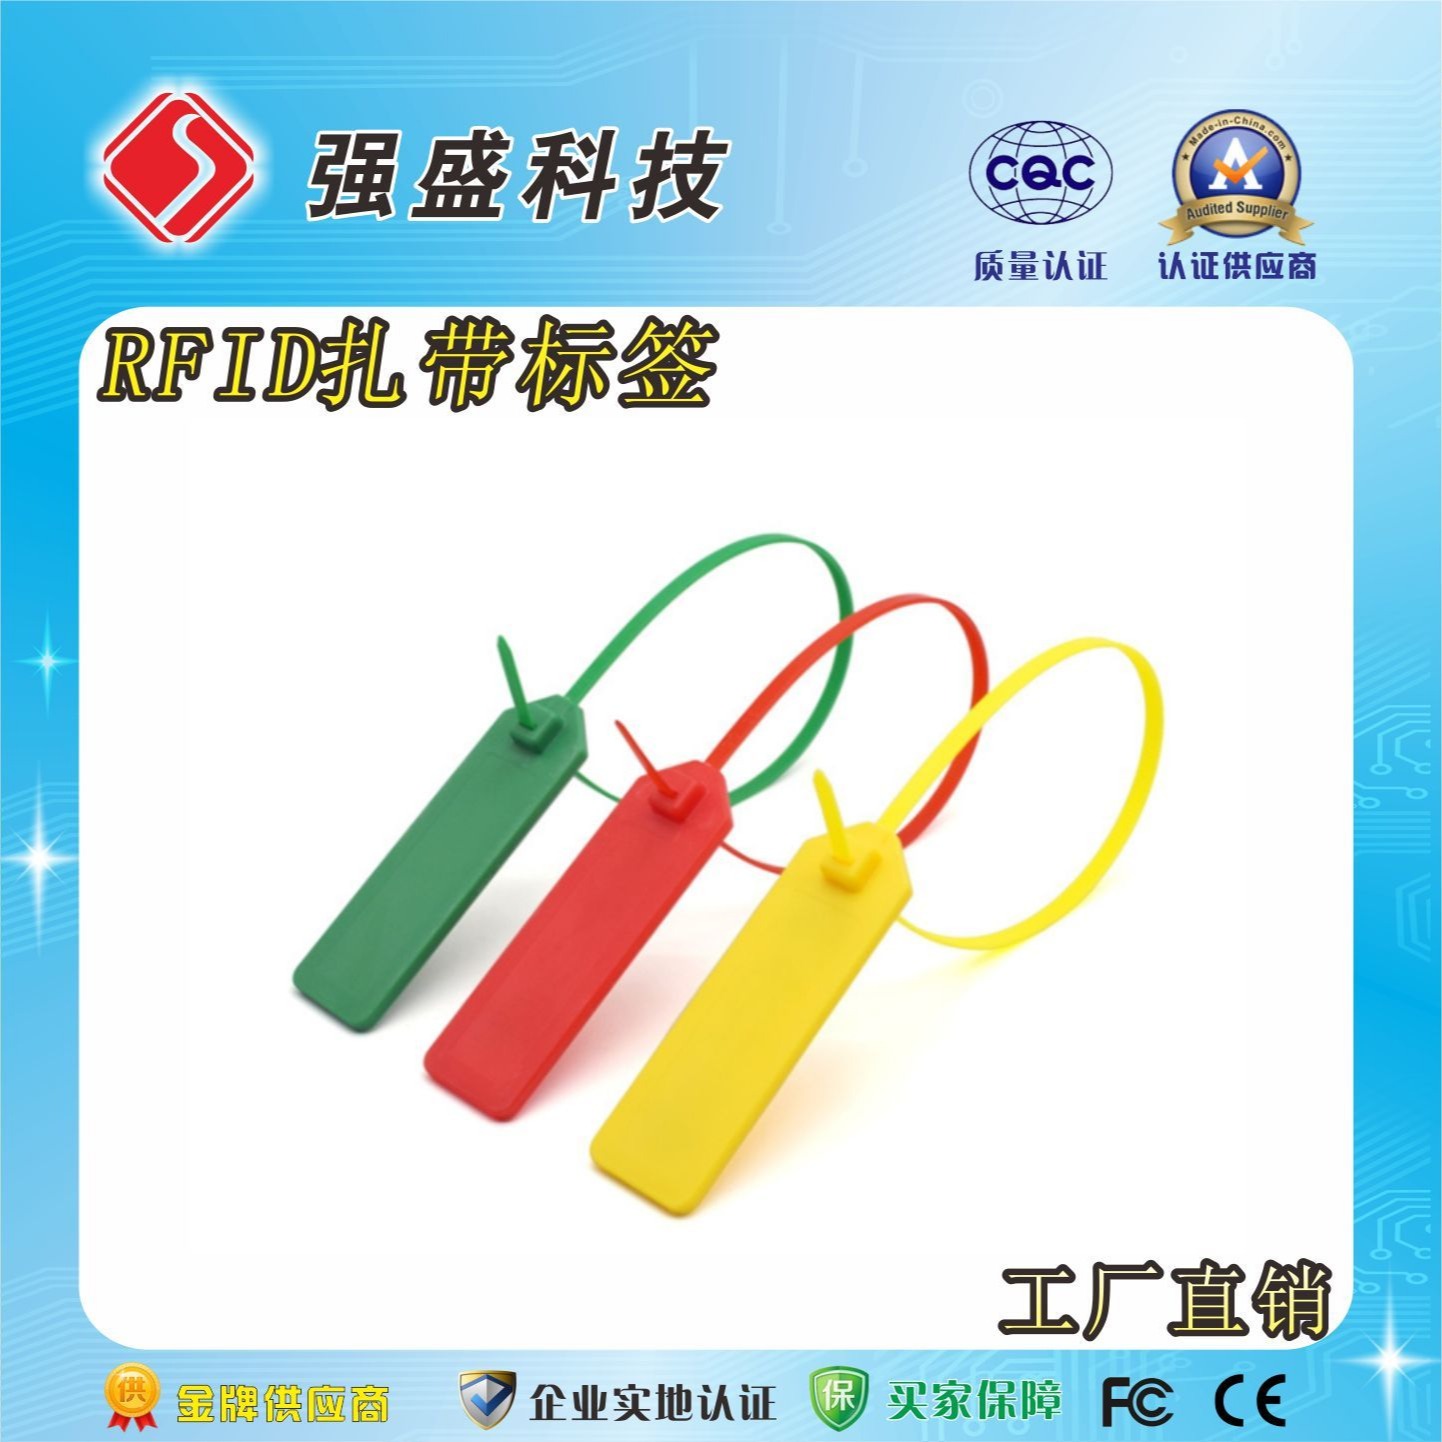 供应RFID扎带标签 QS-T011 超高频耐高温扎带标签